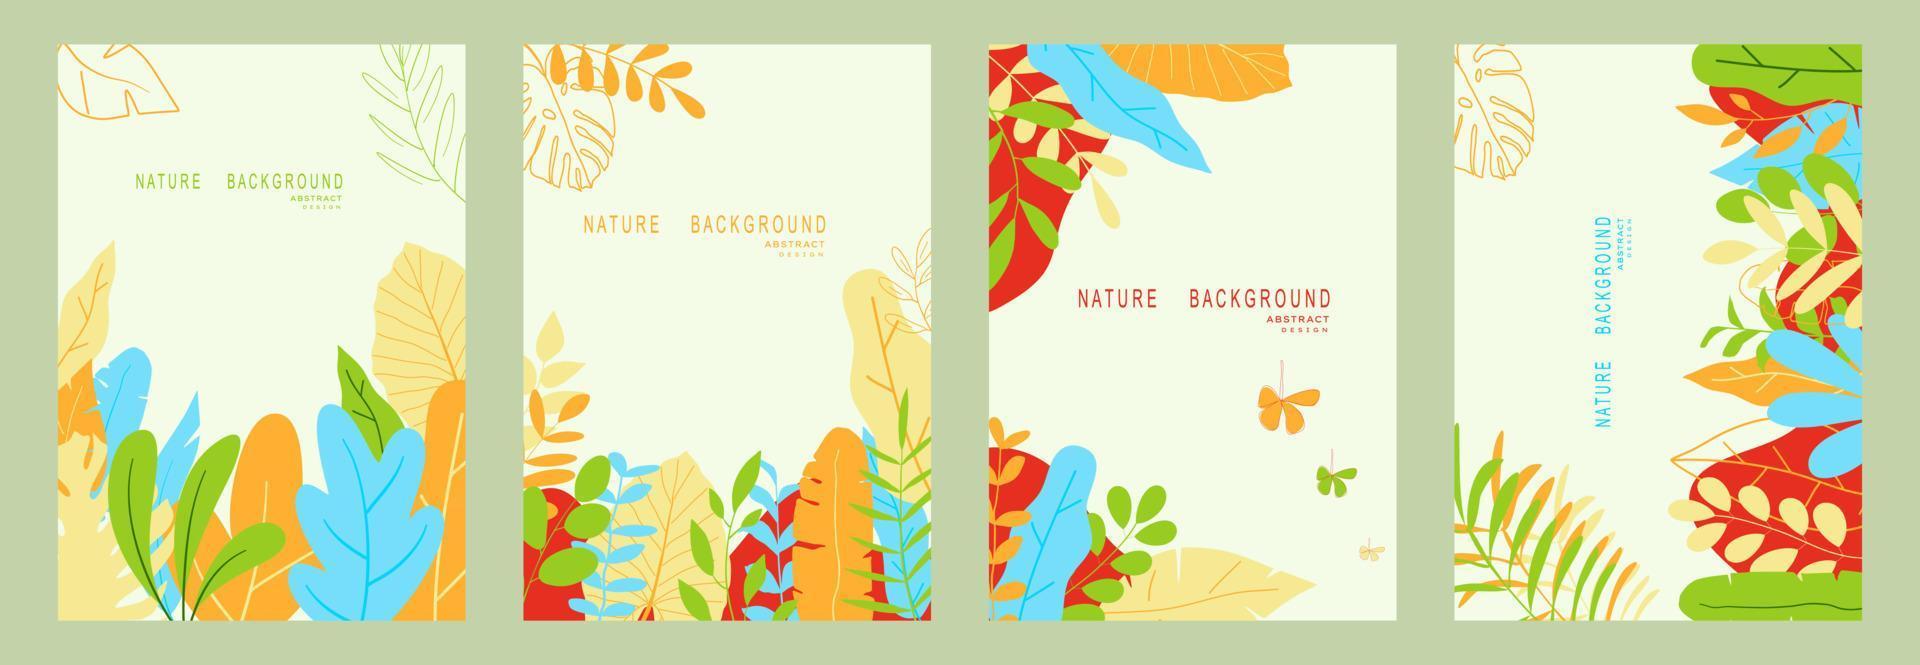 natuur abstracte backgrounds.minimal trendy stijl. verschillende vormen opzetten ontwerpsjablonen goed voor achtergrondkaart groet behang brochure flyer uitnodiging en andere. vector illustratie